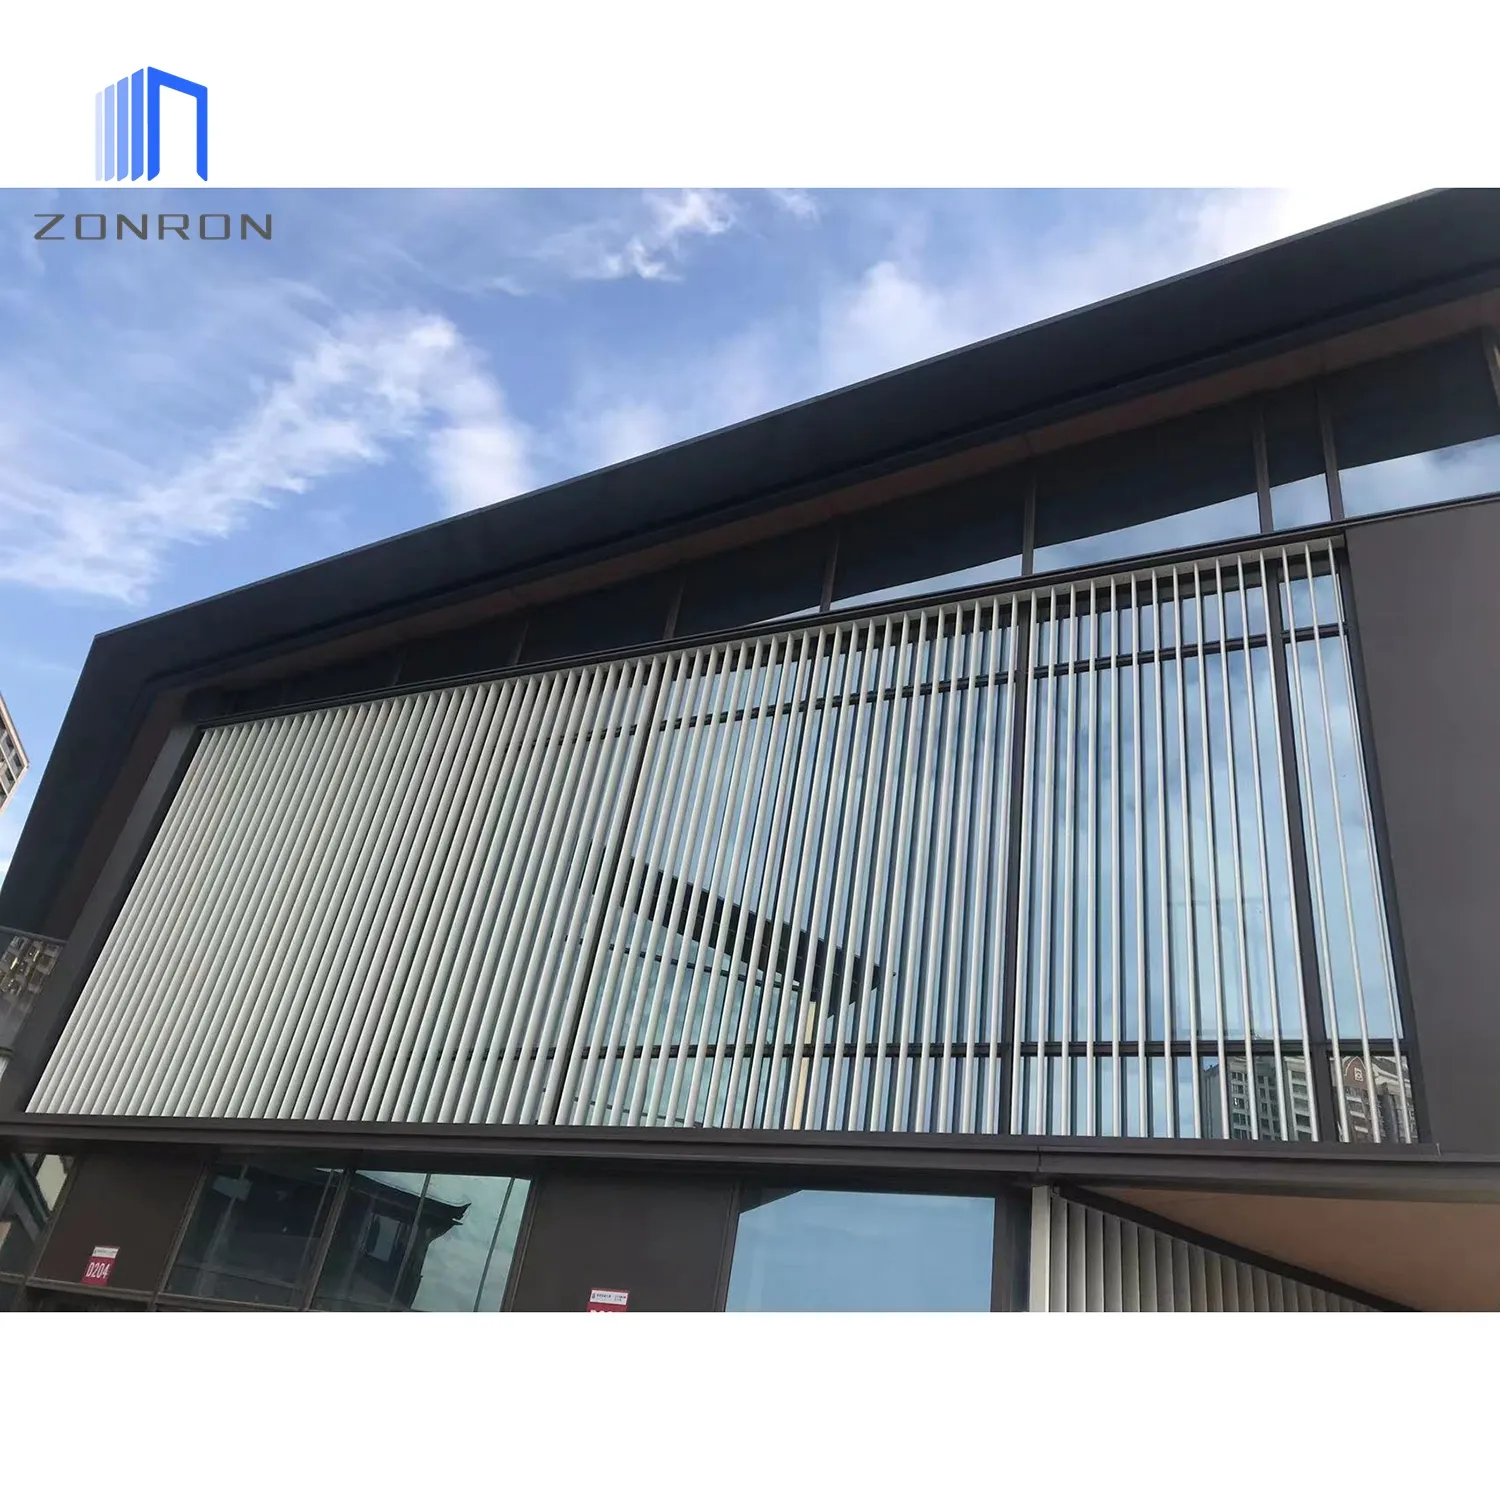 Zonron amostra grátis de alumínio perfil persianas de perfil de ar pára-sol painel solar fachada exterior do edifício persianas com preço baixo